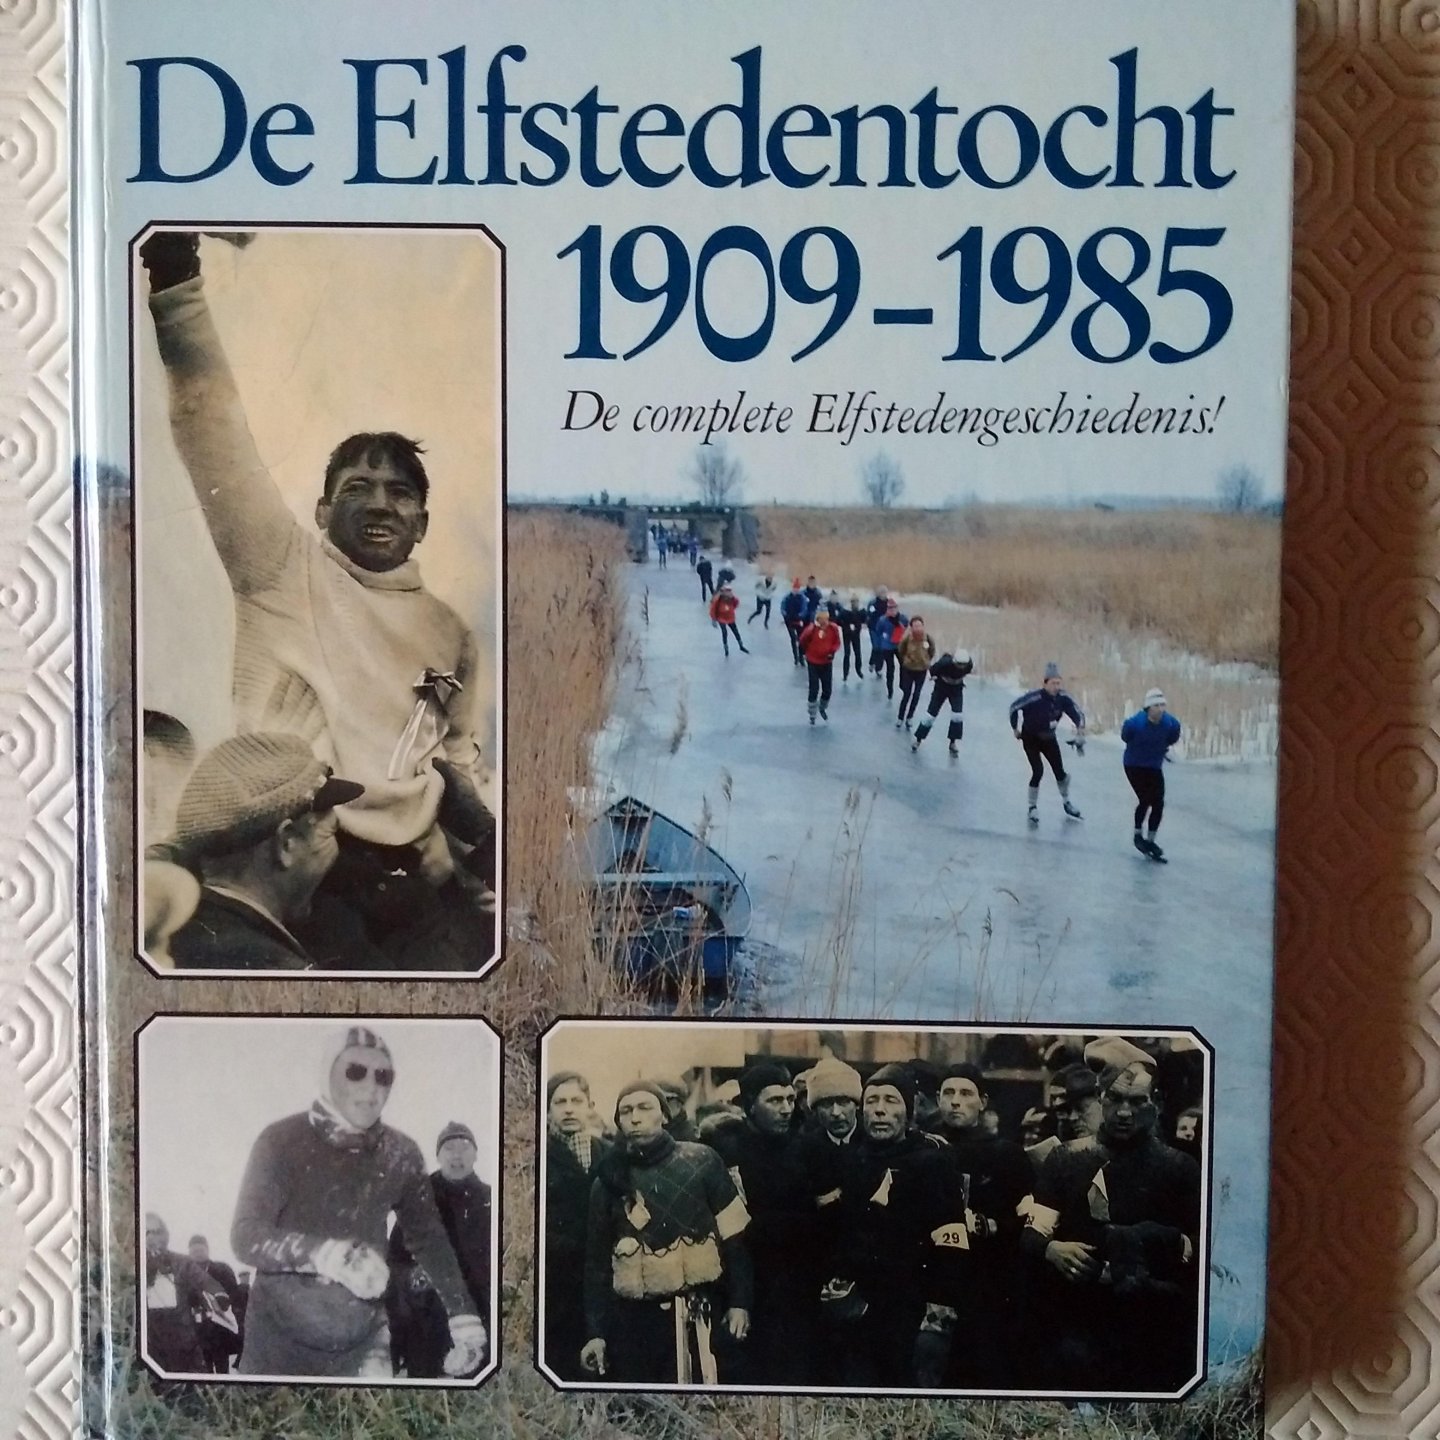 Groot, Pieter de - Meulen, Henk van der - Stegenga, Willem - De Elfstedentocht 1909-1985. De complete Elfstedengeschiedenis!